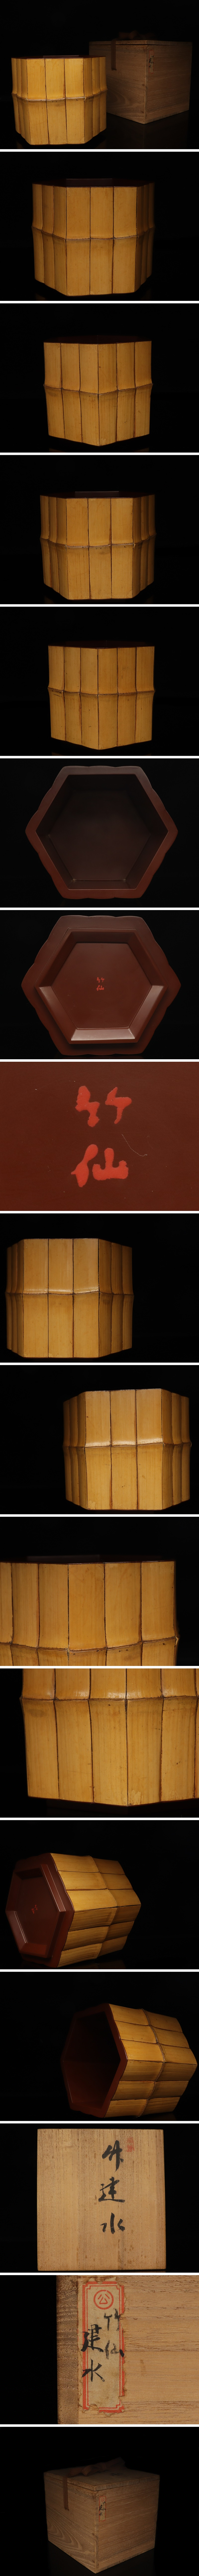 最新購入煎茶道具 竹仙 造 竹製 建水 超稀少 珍品 旧家 初だし品 箱付 S237 木工、竹工芸